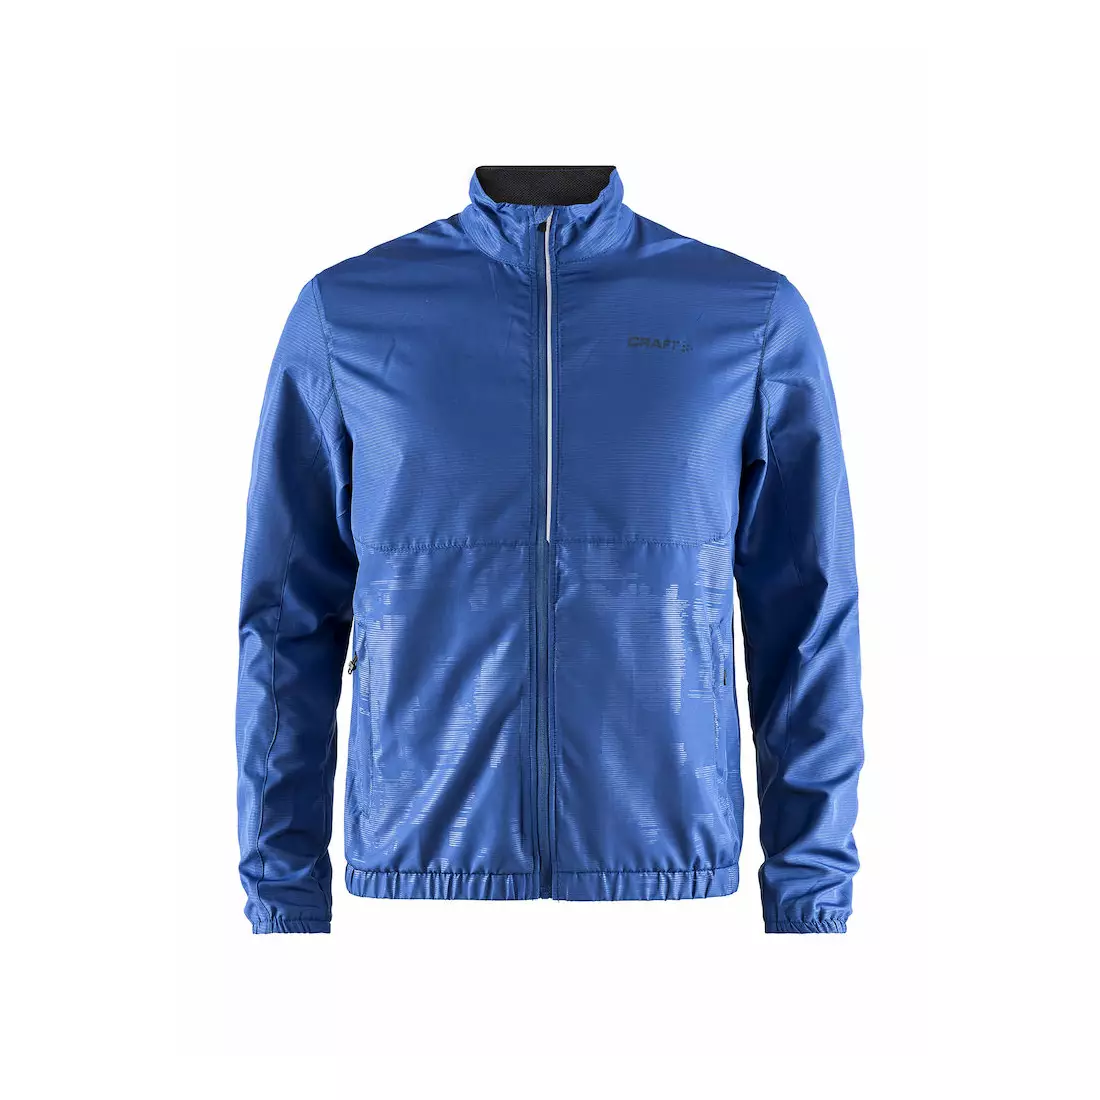 CRAFT EAZE lehká běžecká bunda, pánská, modrá 1906402-353000